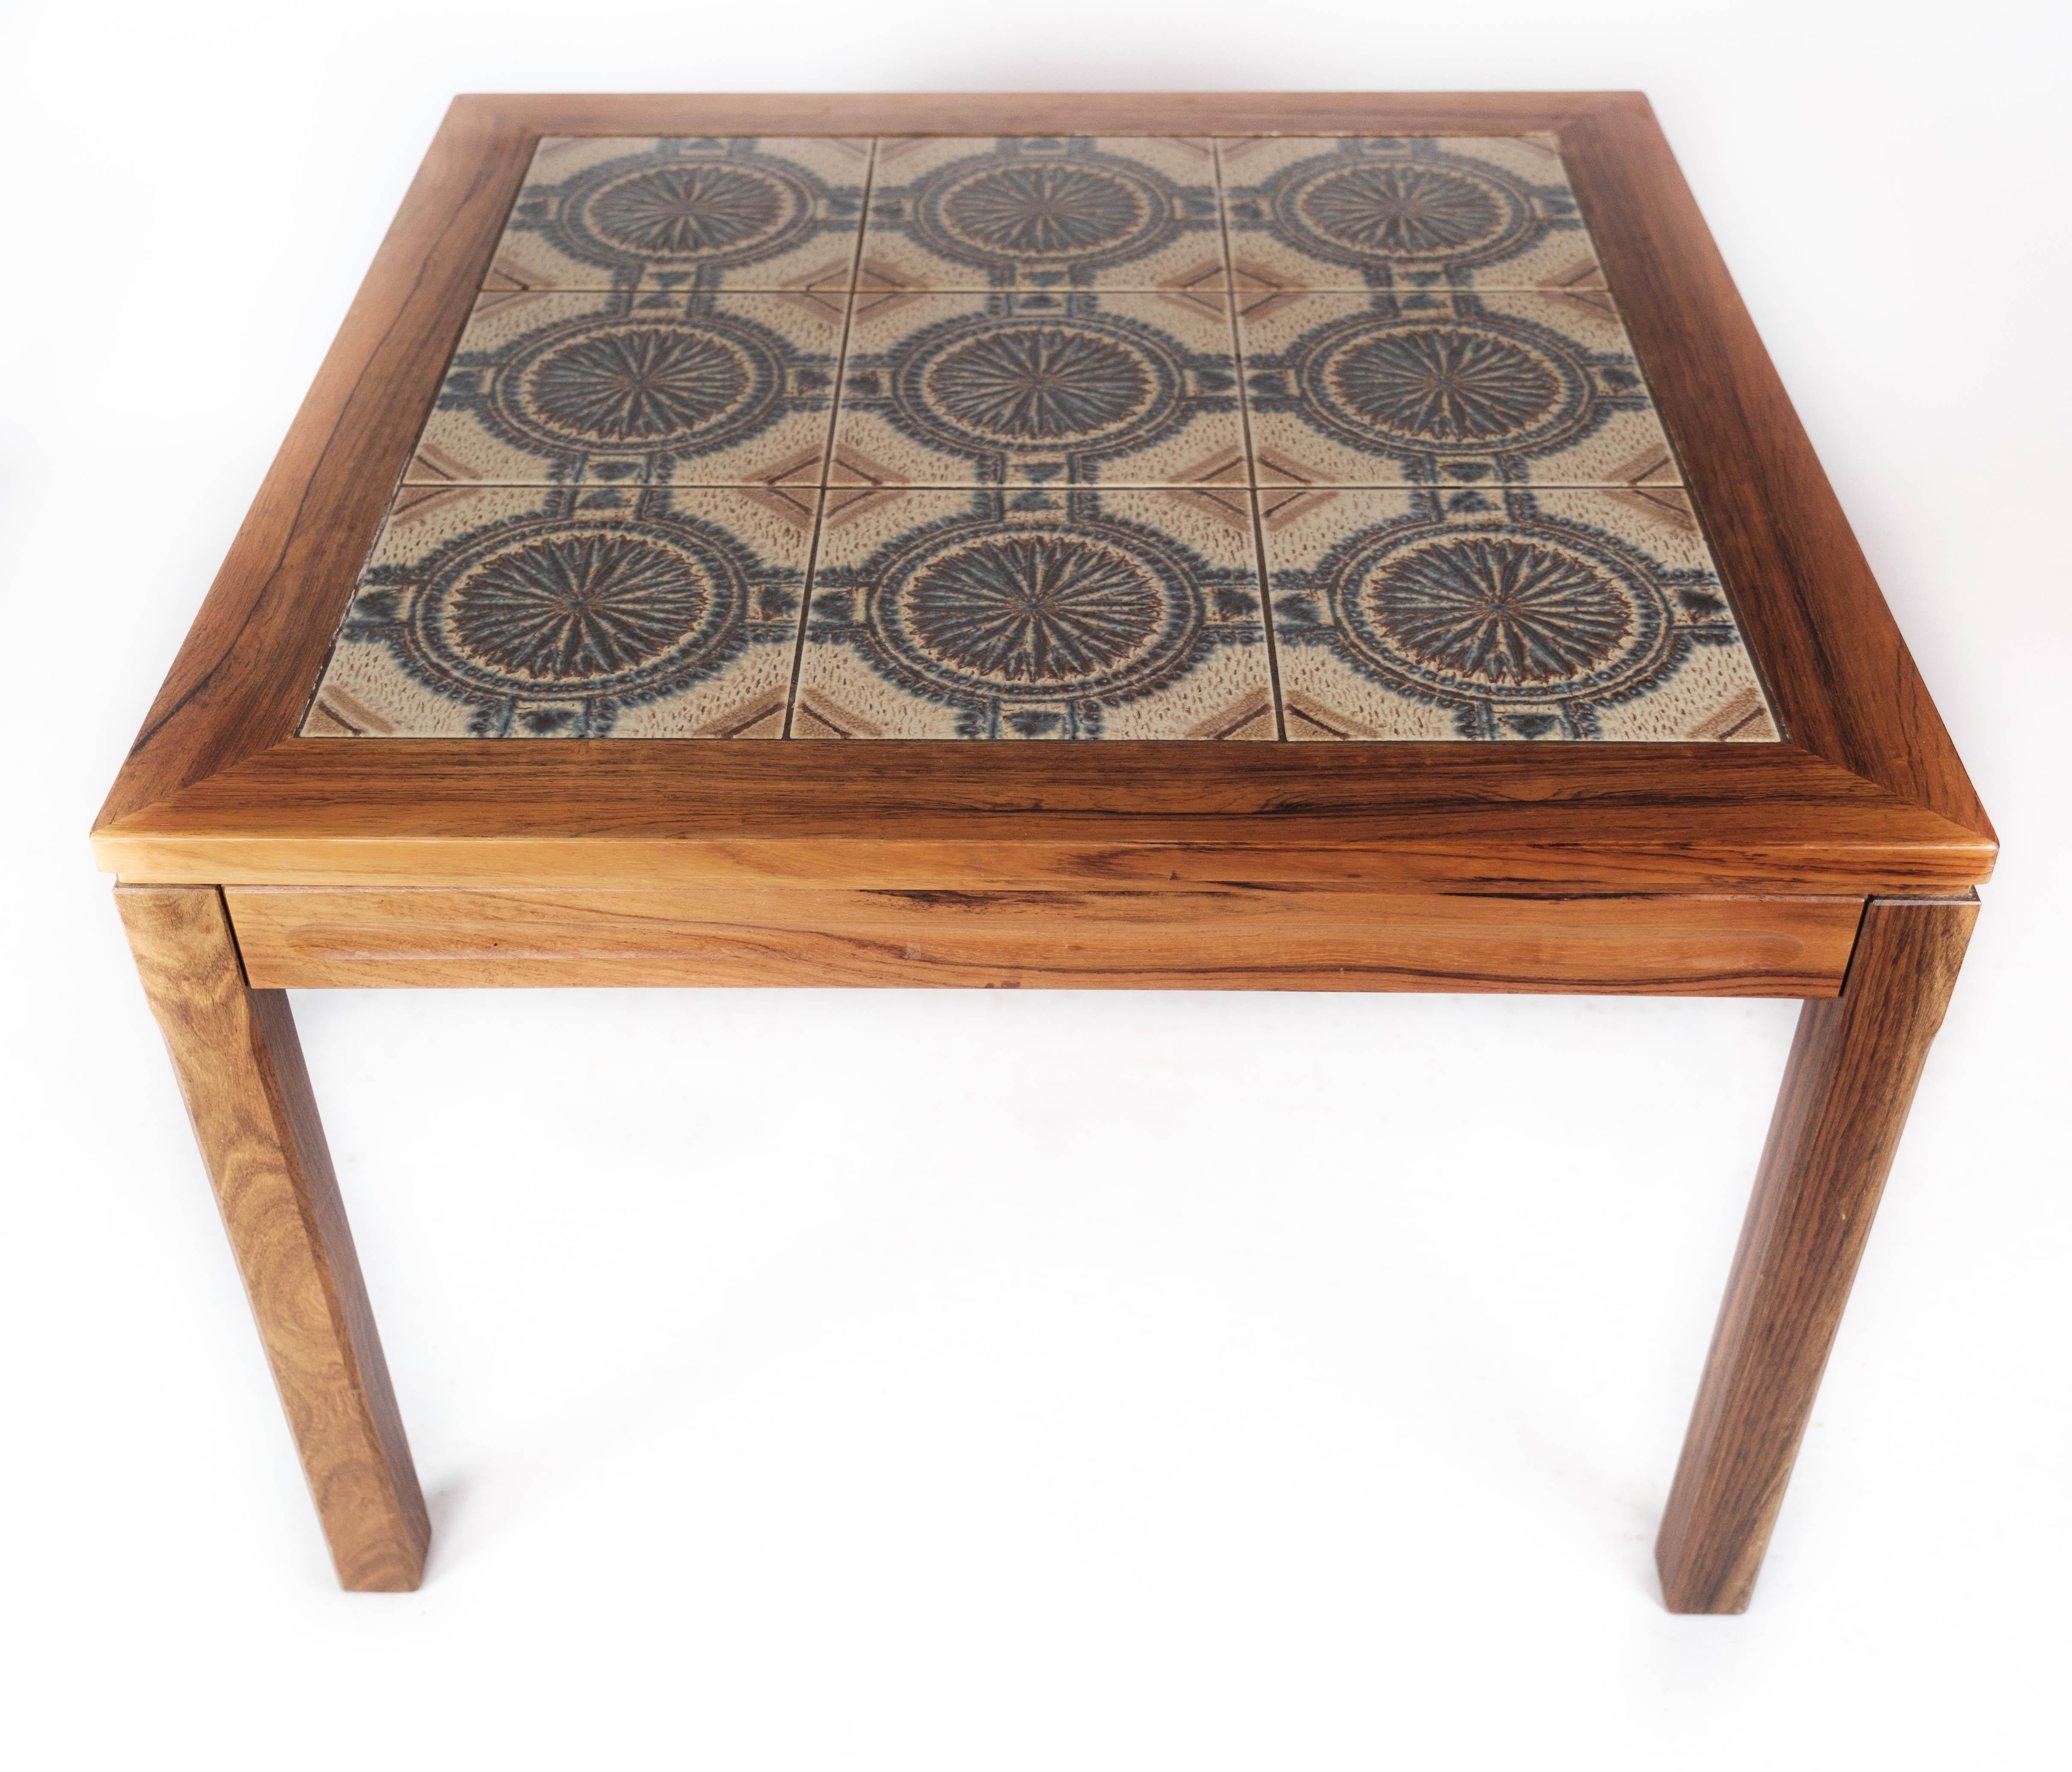 La table basse en bois de rose, réalisée dans le design danois des années 1960, est un bel exemple de l'esthétique et de la qualité de l'artisanat.

Les tons chauds et le magnifique motif du bois de rose confèrent à la table une élégance